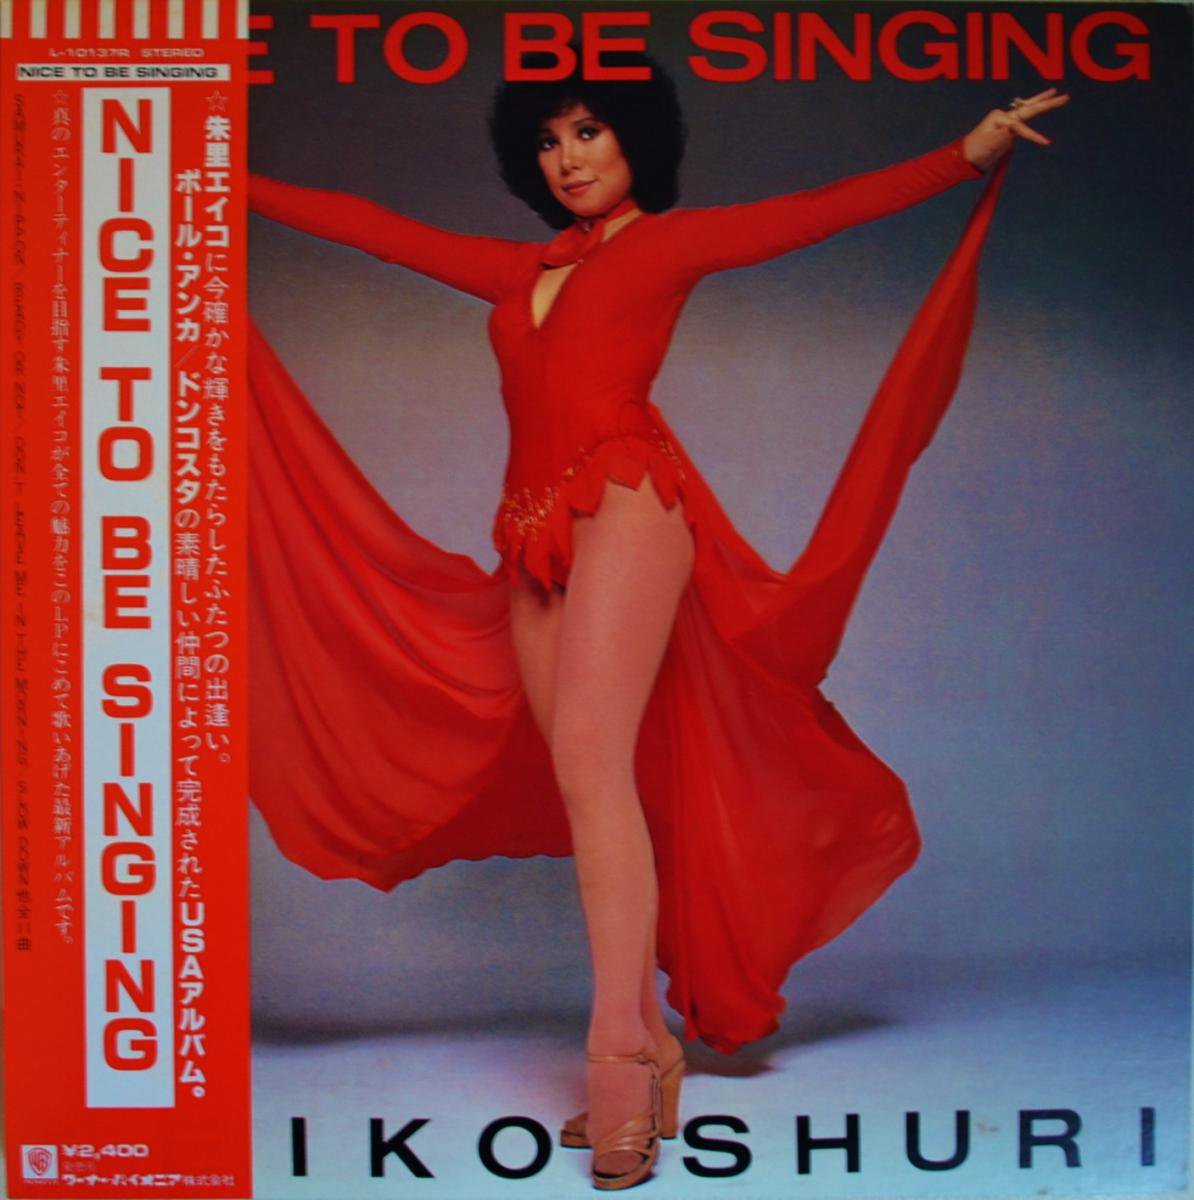 Τ EIKO SHURI / NICE TO BE SINGING (LP)